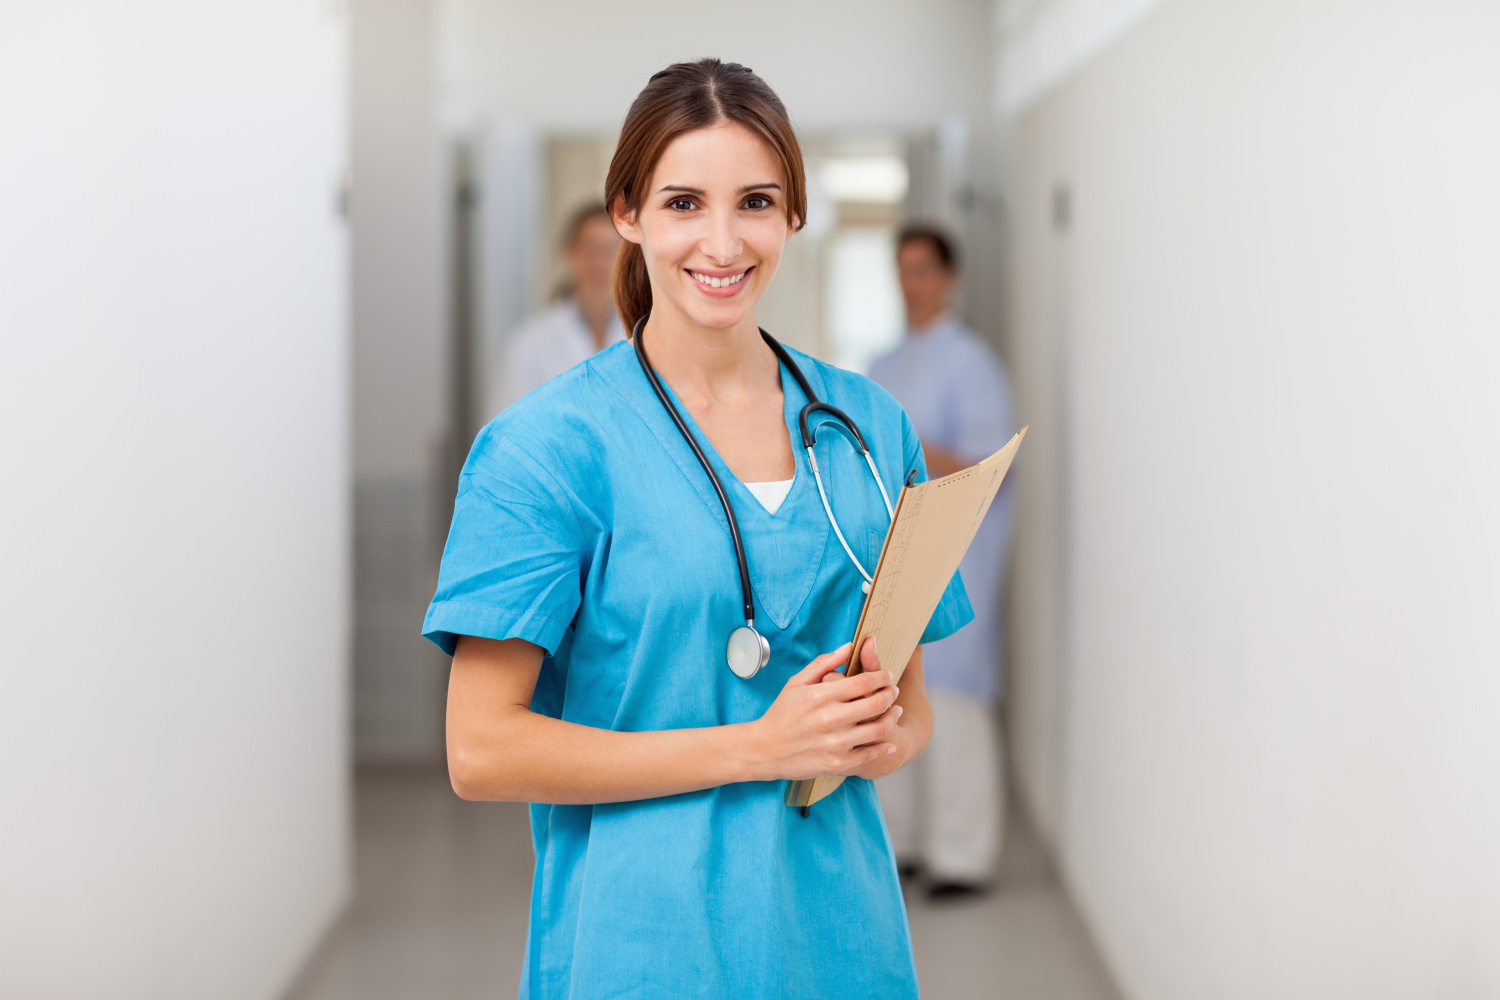 Обязанности школьной медсестры: права и ответственность работника